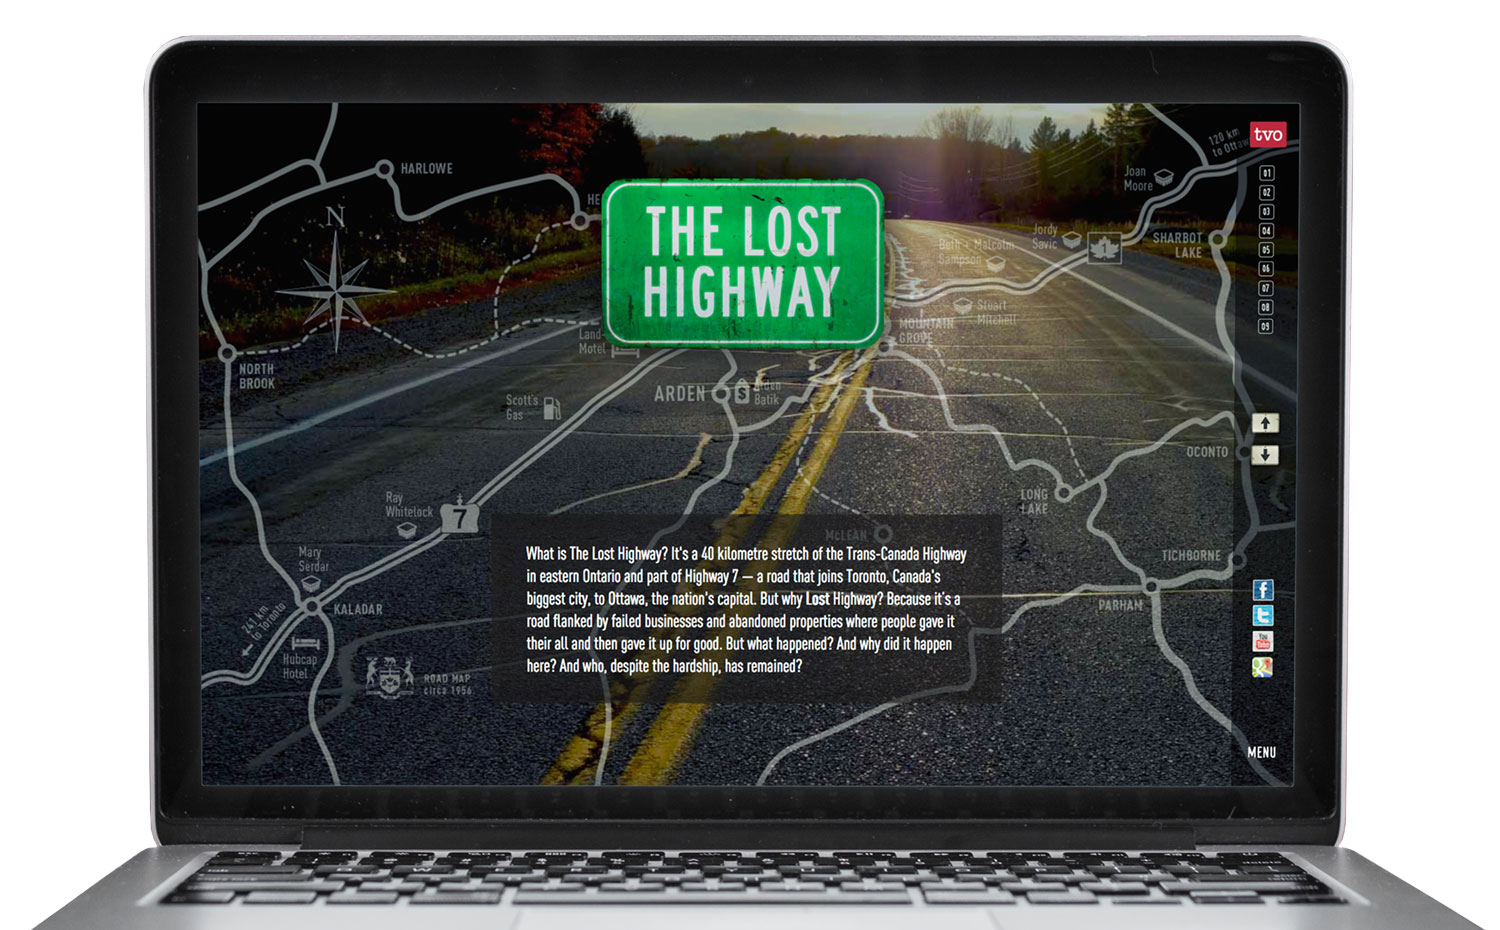 The Lost Highway website